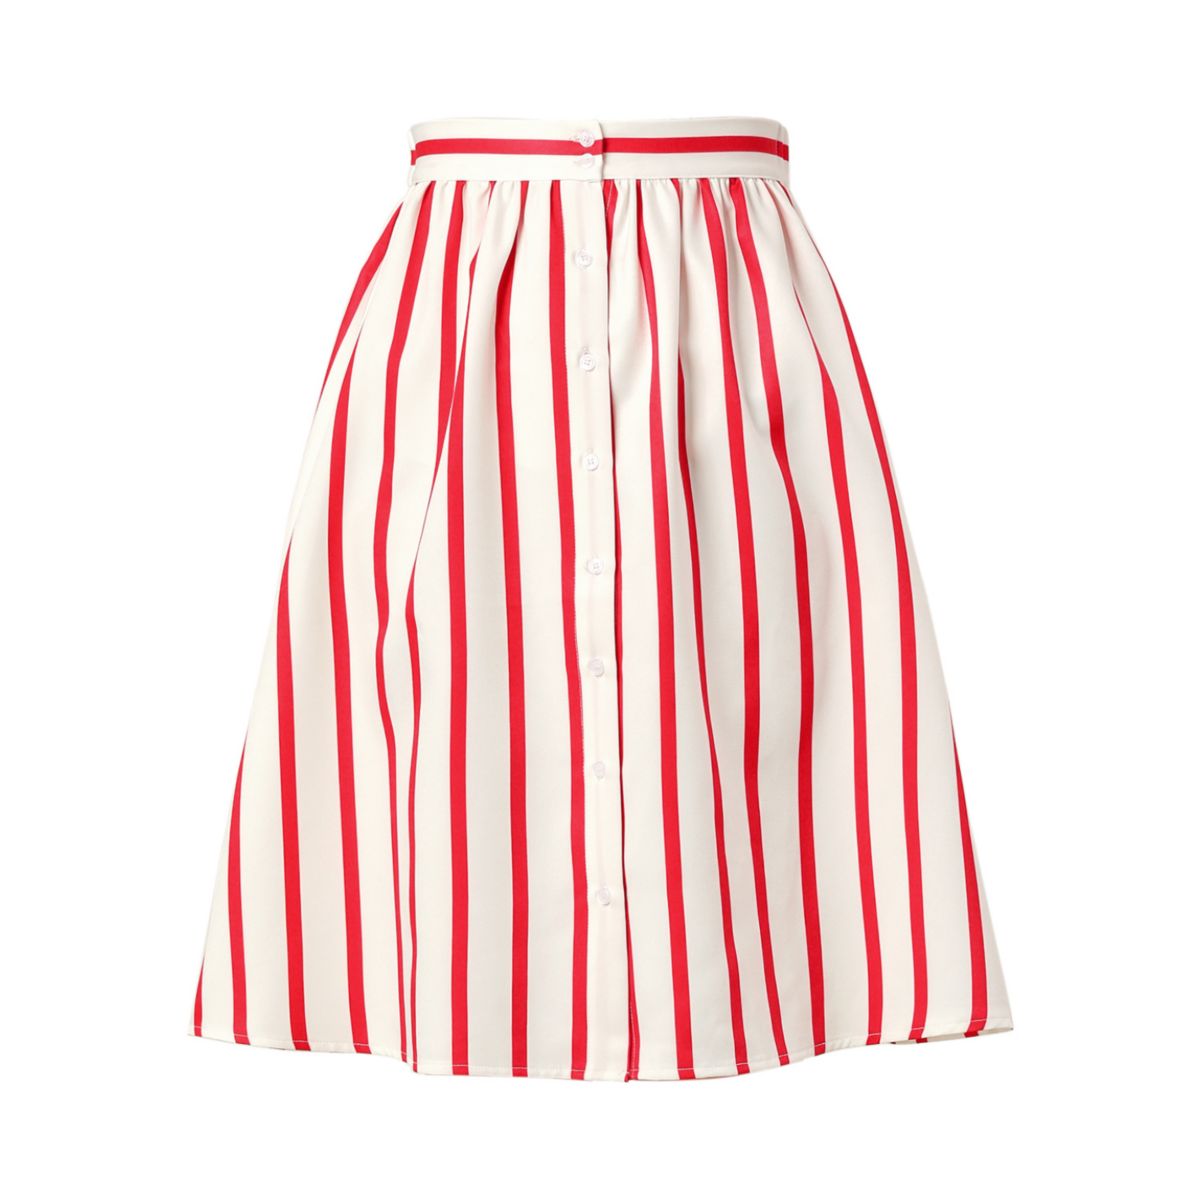 Женская полосатая юбка-миди с пуговицами спереди и эластичной спинкой ALLEGRA K